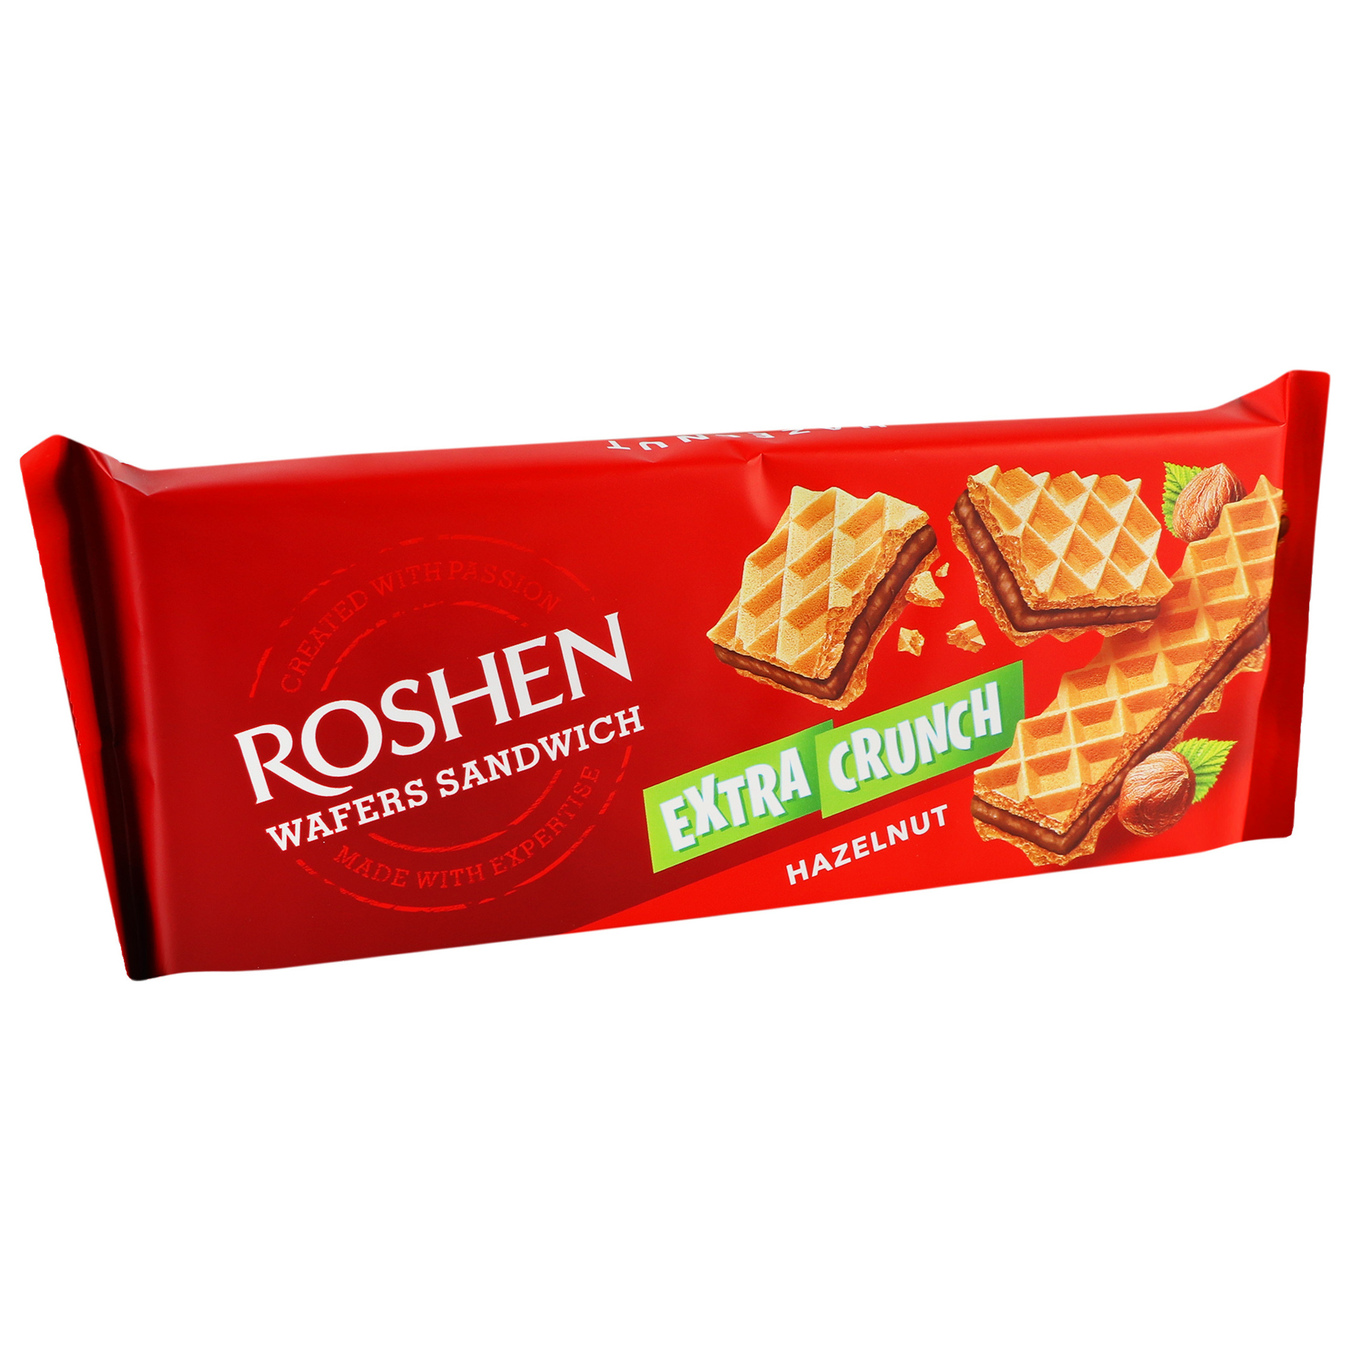 Вафлі Roshen wafers sandwich crunch горіх 142г 3